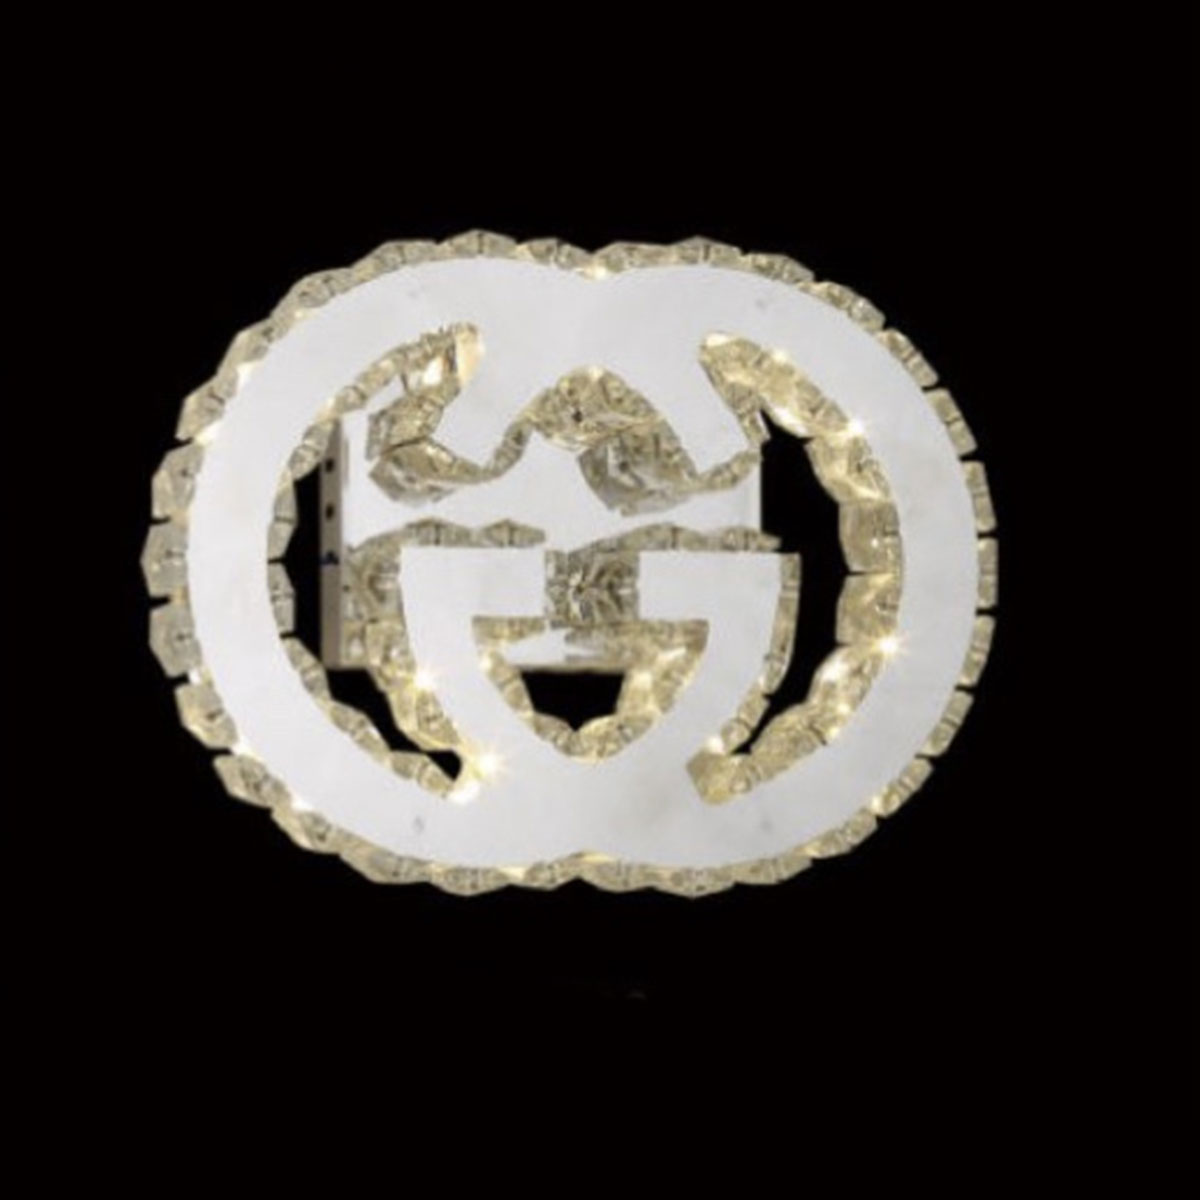 Đèn Tường Pha Lê logo Gucci KP9 1922 270x200